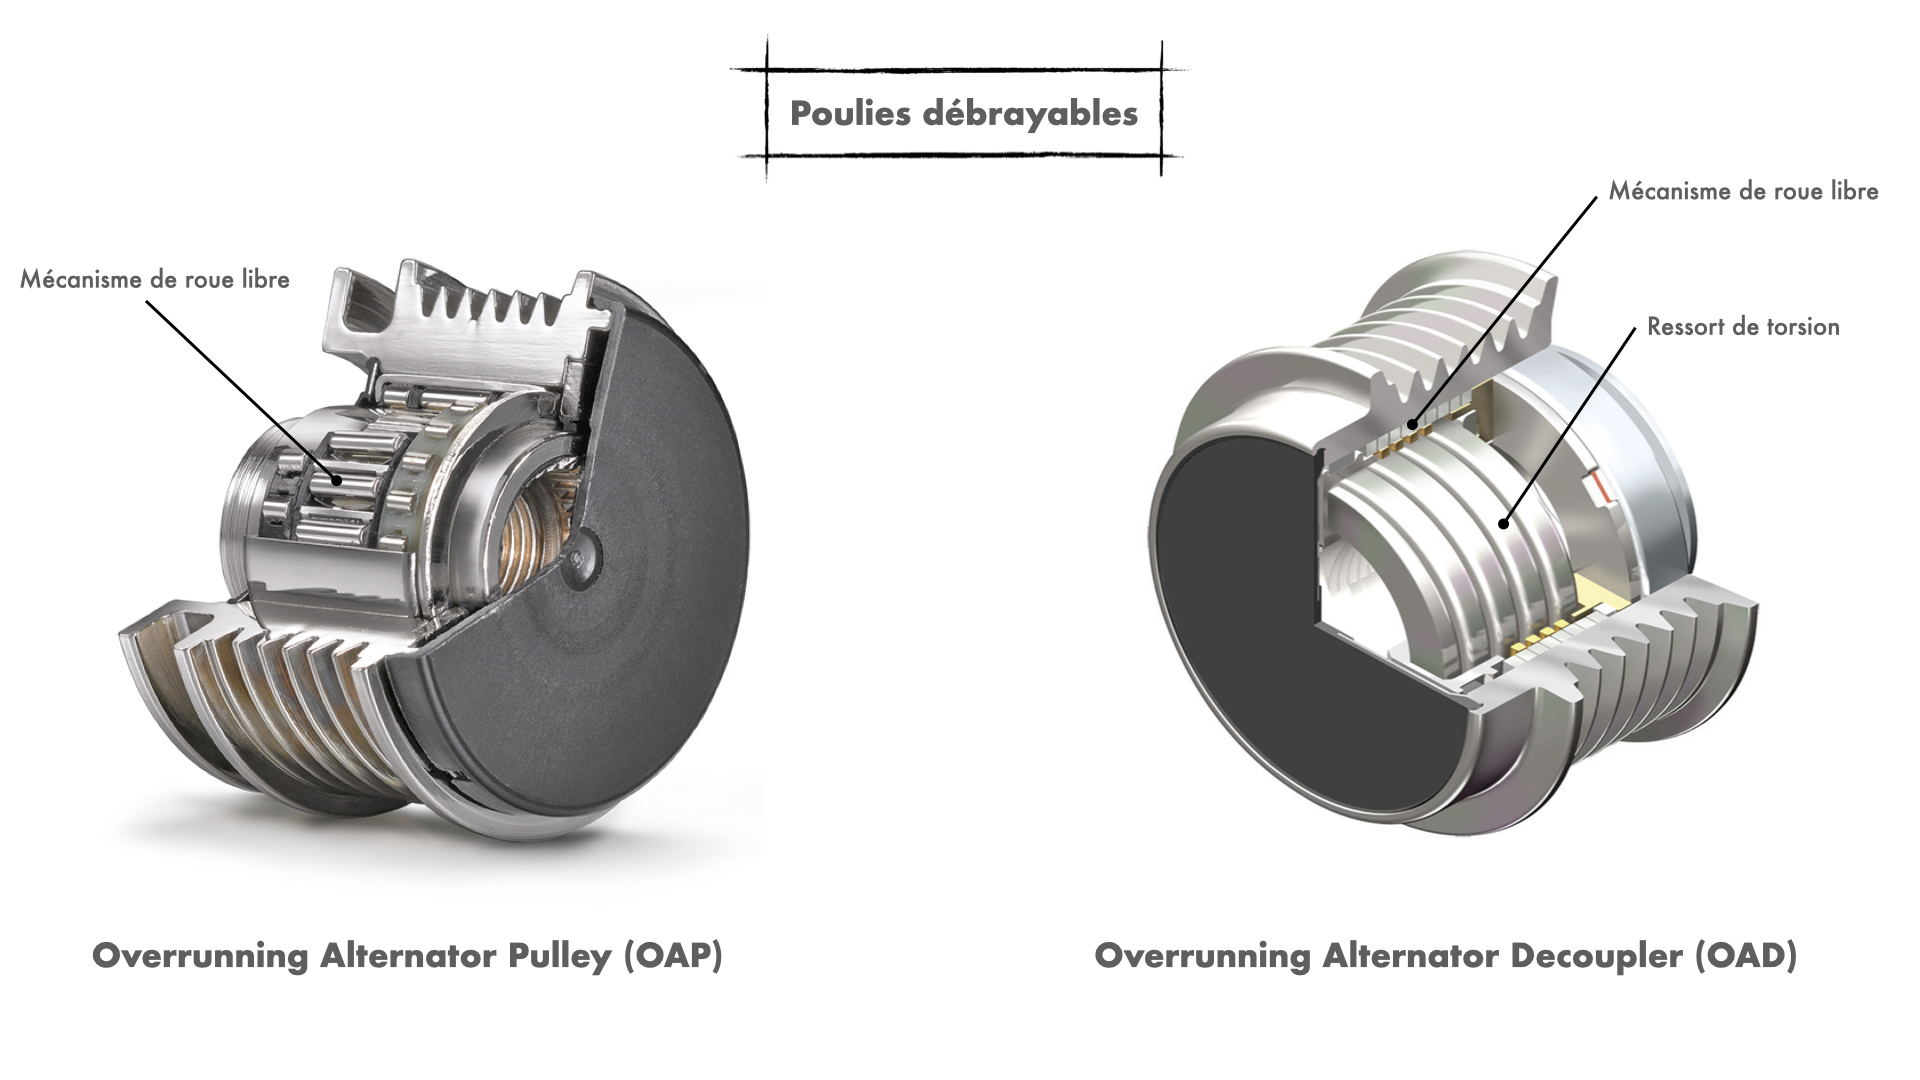 Poulies débrayables alternateur OAP - Overrunning Alternator Pulley - et OAD - Overrunning Alternator Decoupler